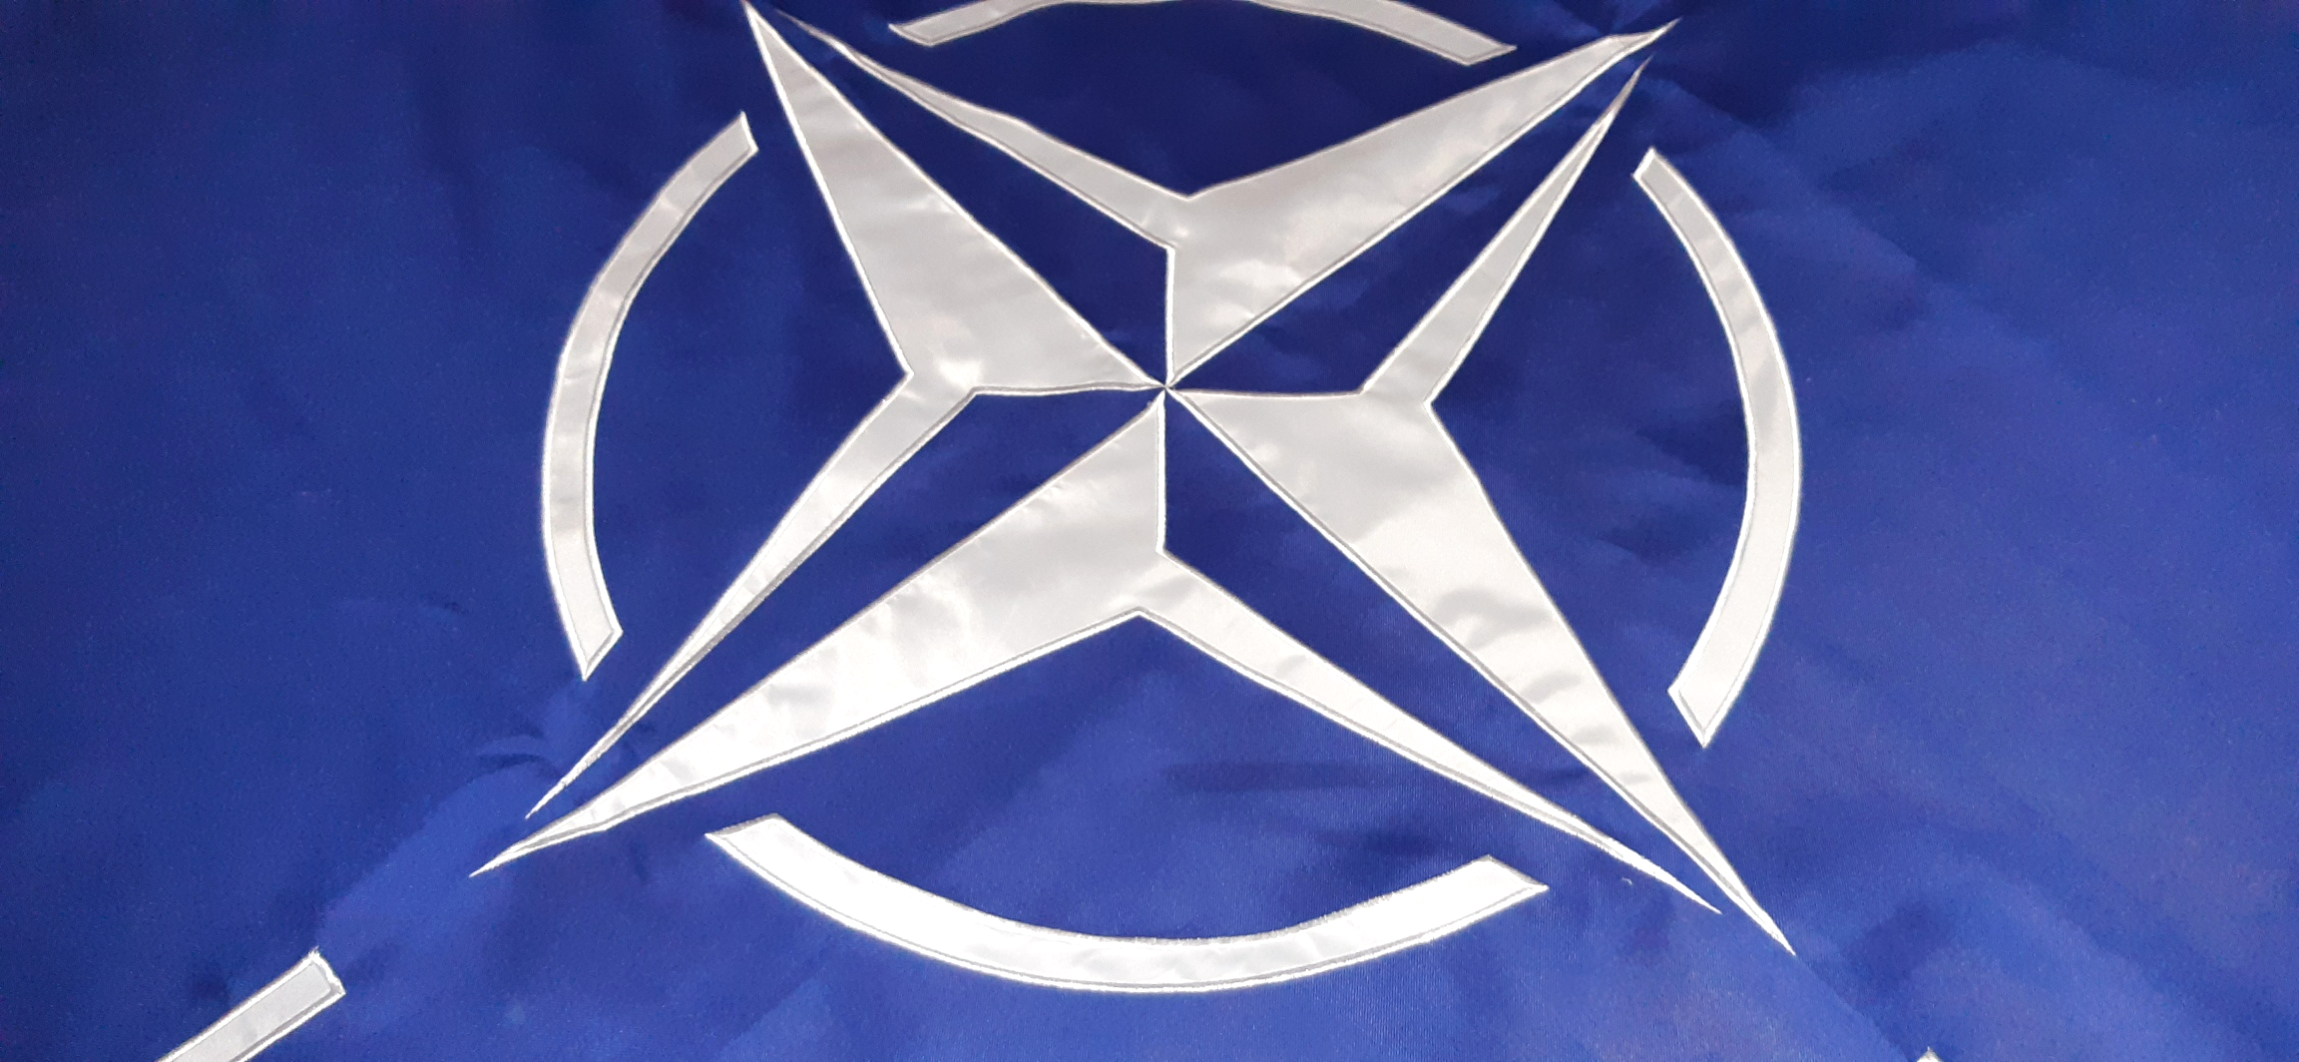 NATO SYDD FLAGGA PREMINUM KVALITET 240X150CM FÖR FLAGGSTÅNG 10 METER